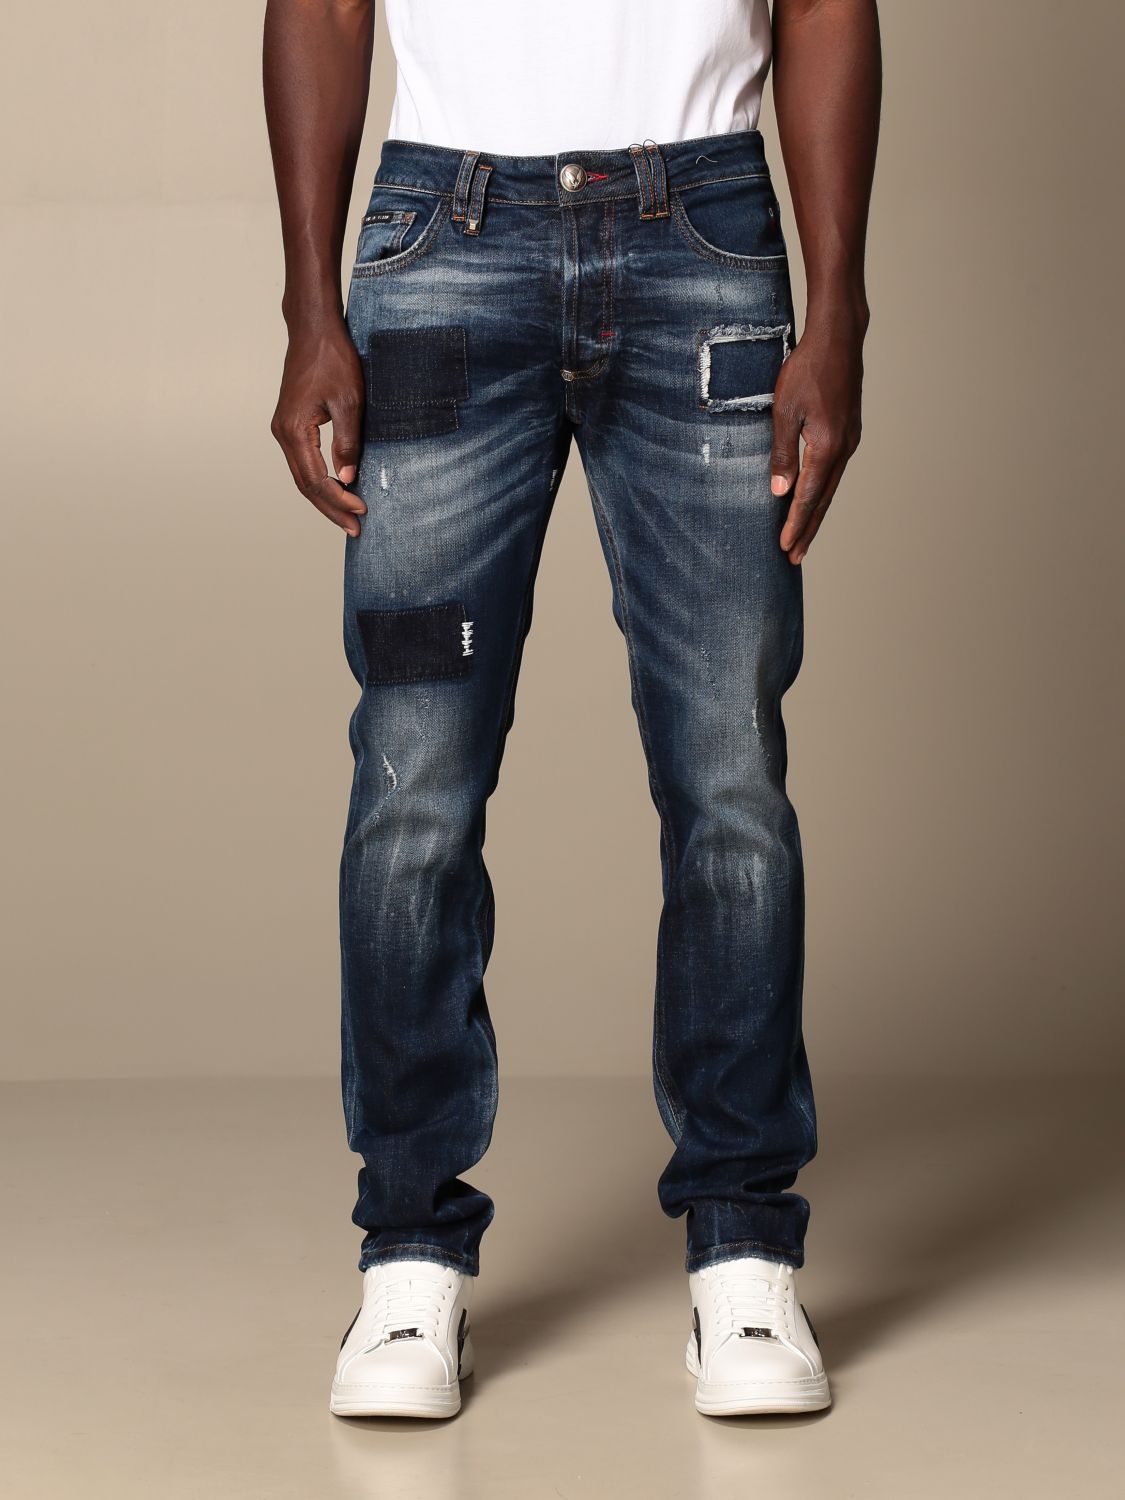 Jeans slimPhilipp Plein in Denim da Uomo colore Bianco Uomo Abbigliamento da Jeans da Jeans dritti 